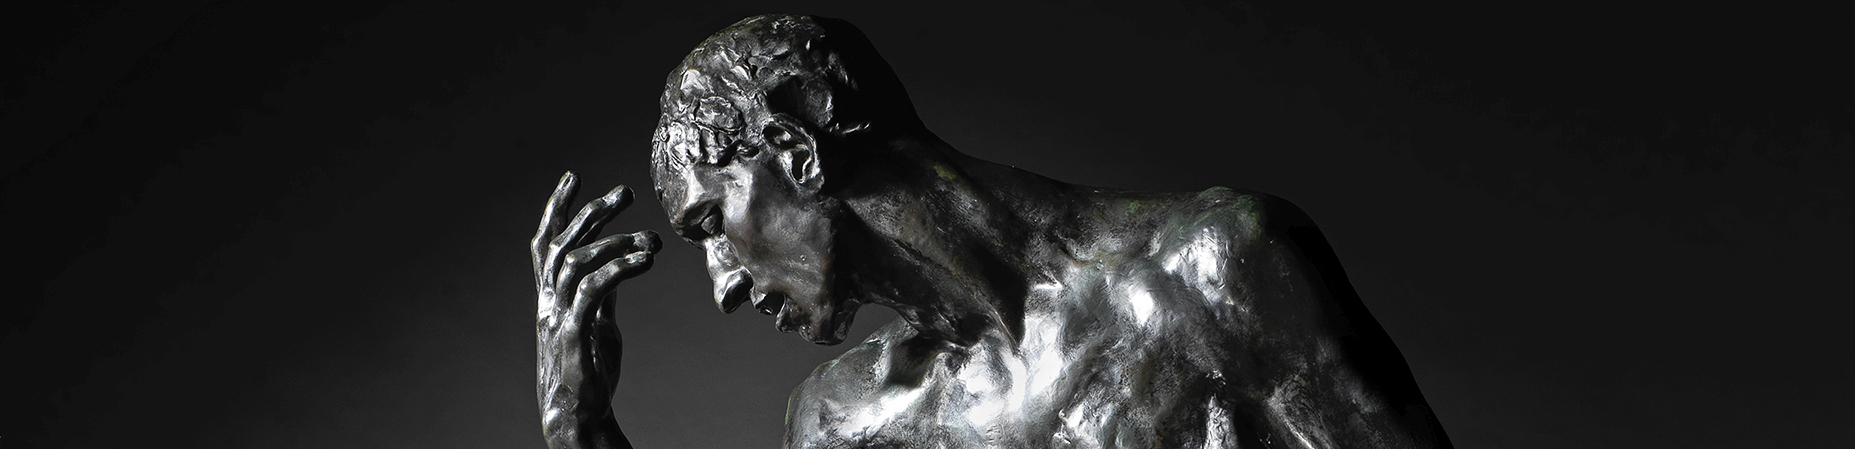 Si quiere comprar un bronce de Rodin, ¡en Bonhams en octubre!